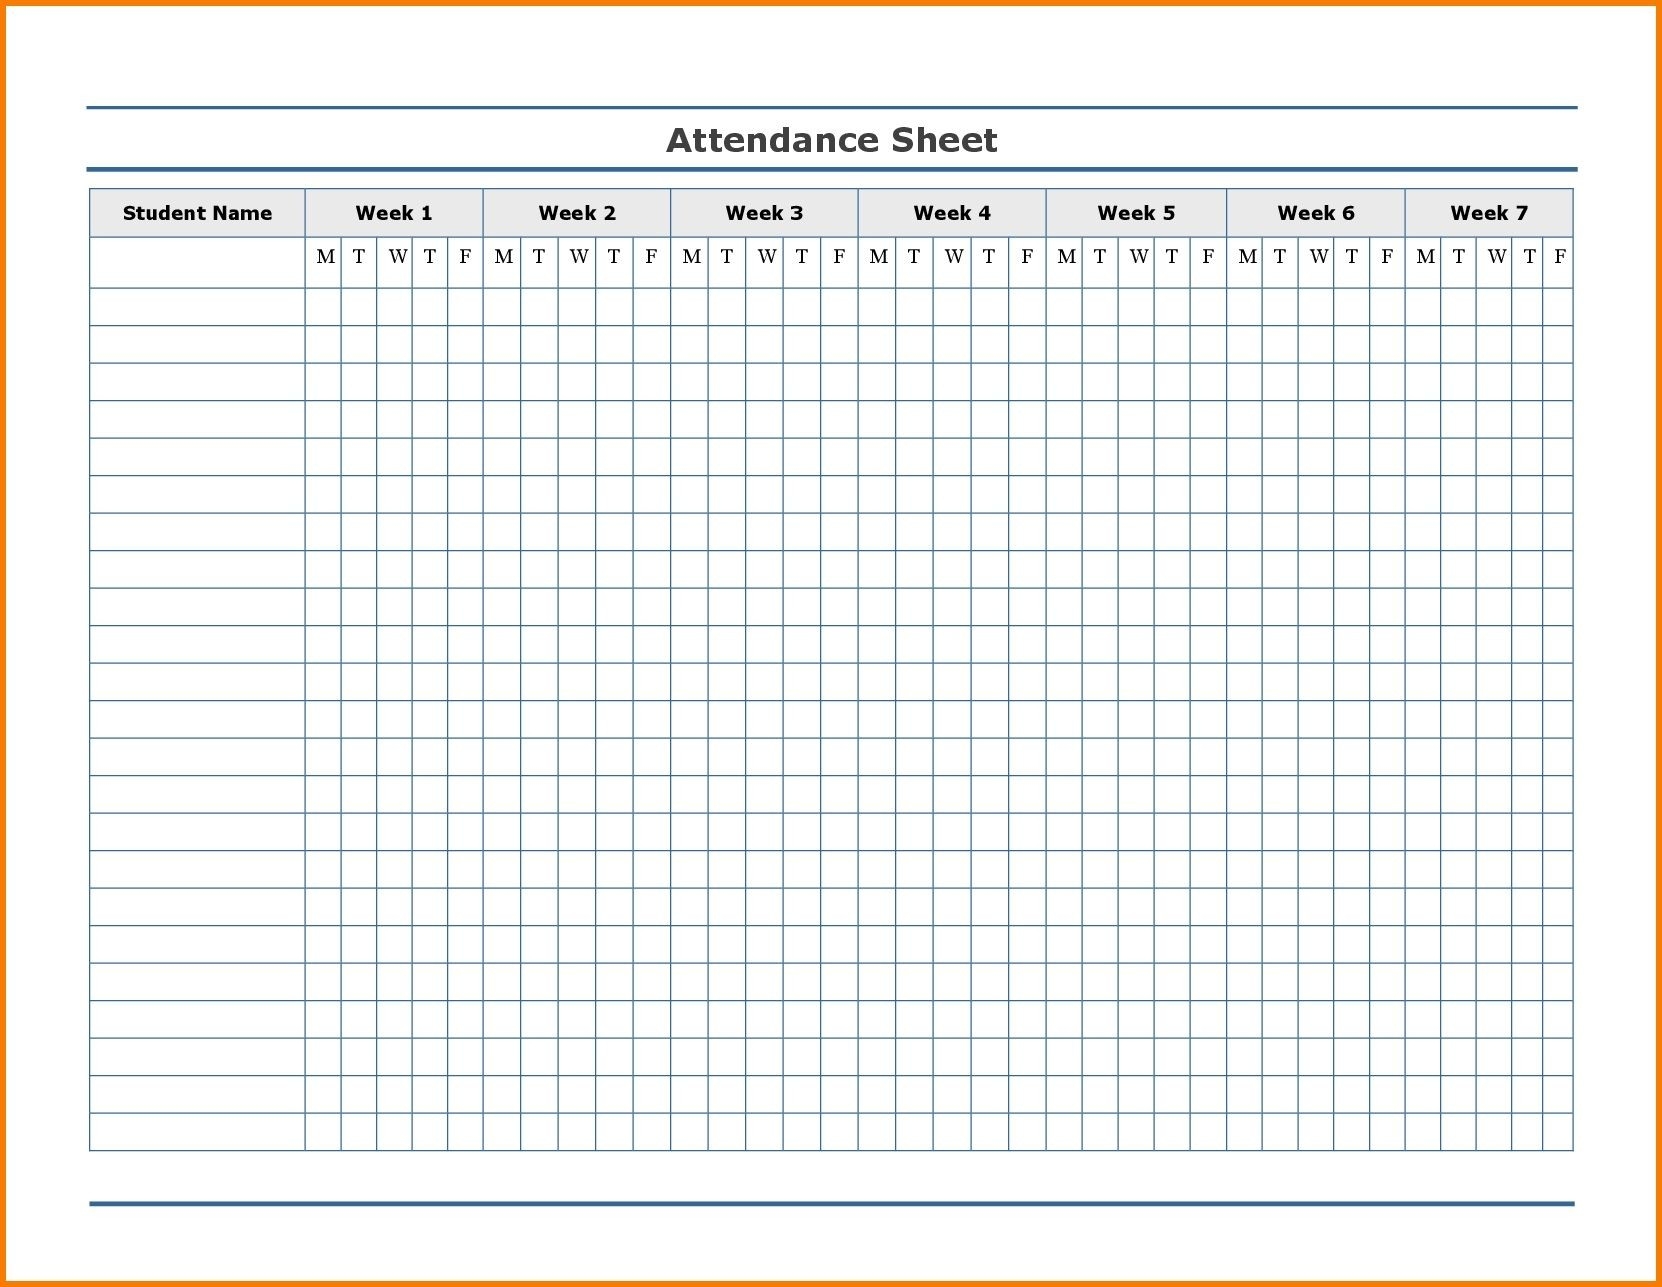 Free Employee Attendance Calendar | Employee Tracker-Free Printable Employee Attendance Forms 2021